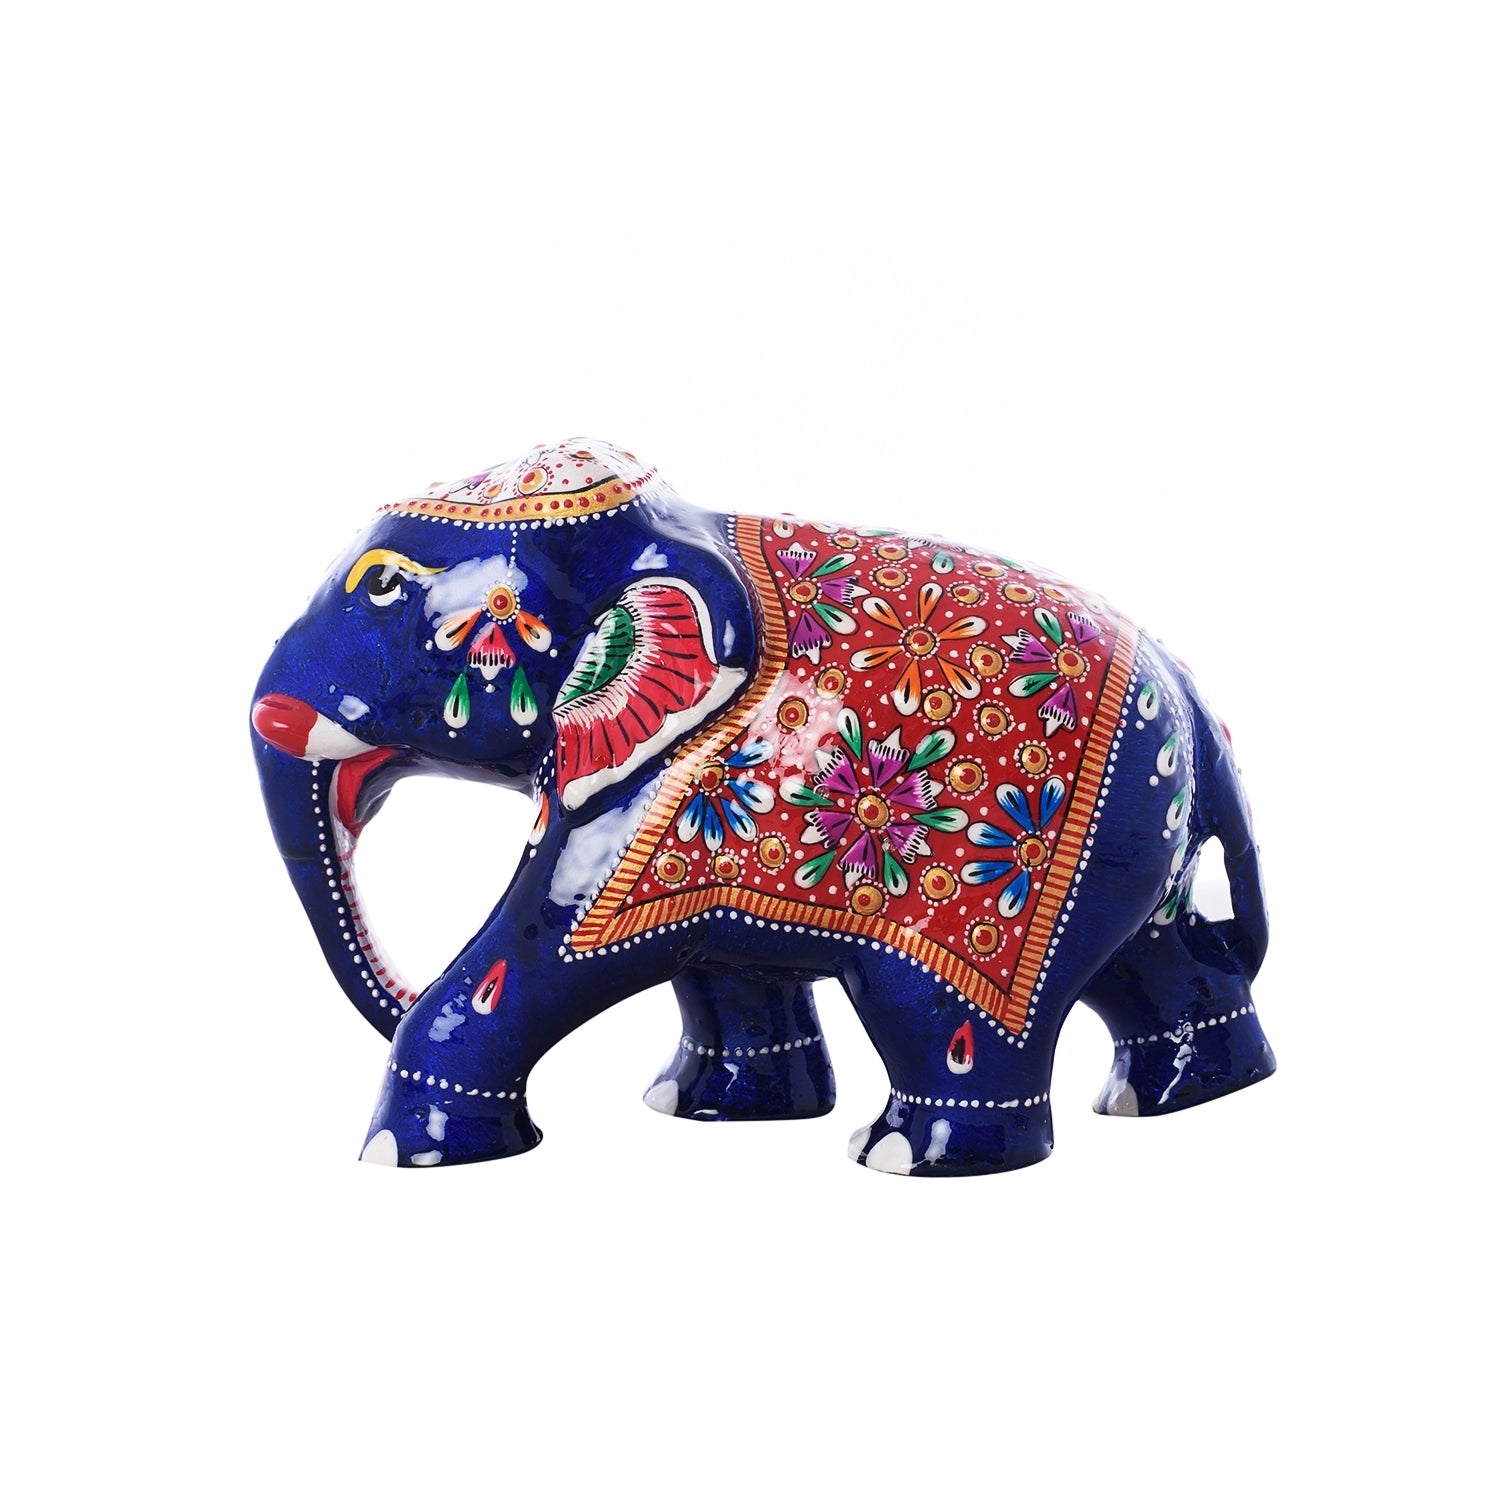 Colorful Meenakari Elephant Figurine 3